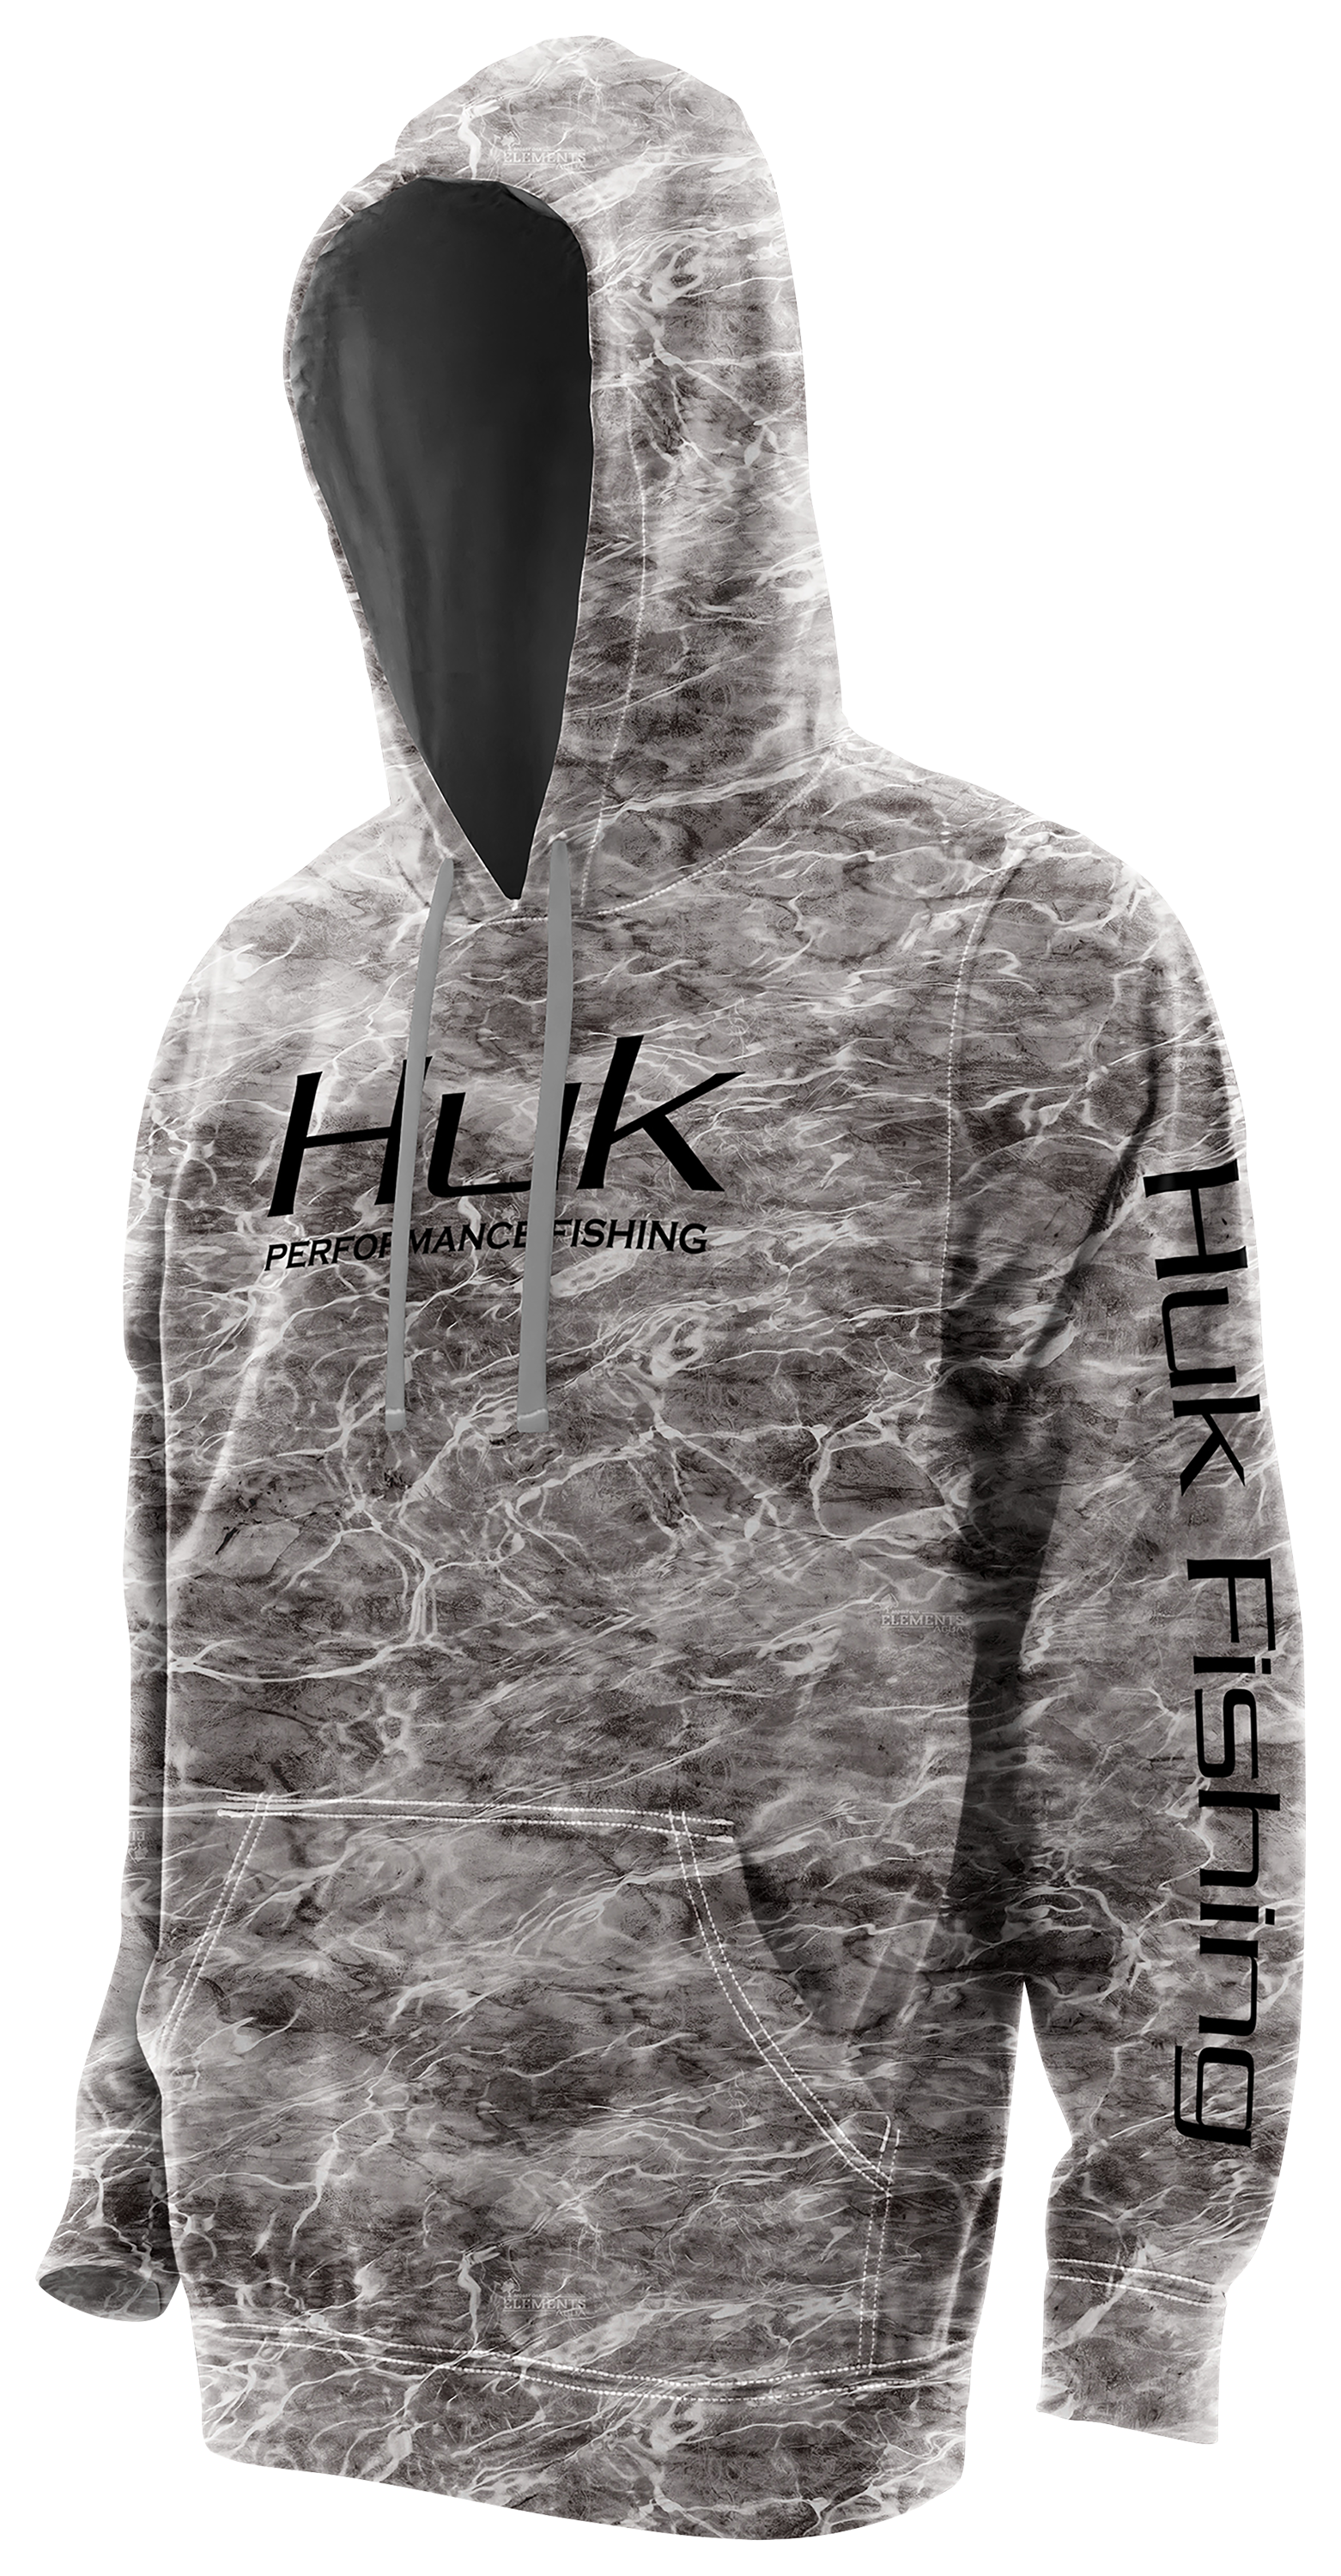 Huk Performance Long-Sleeve Hoodie for Men